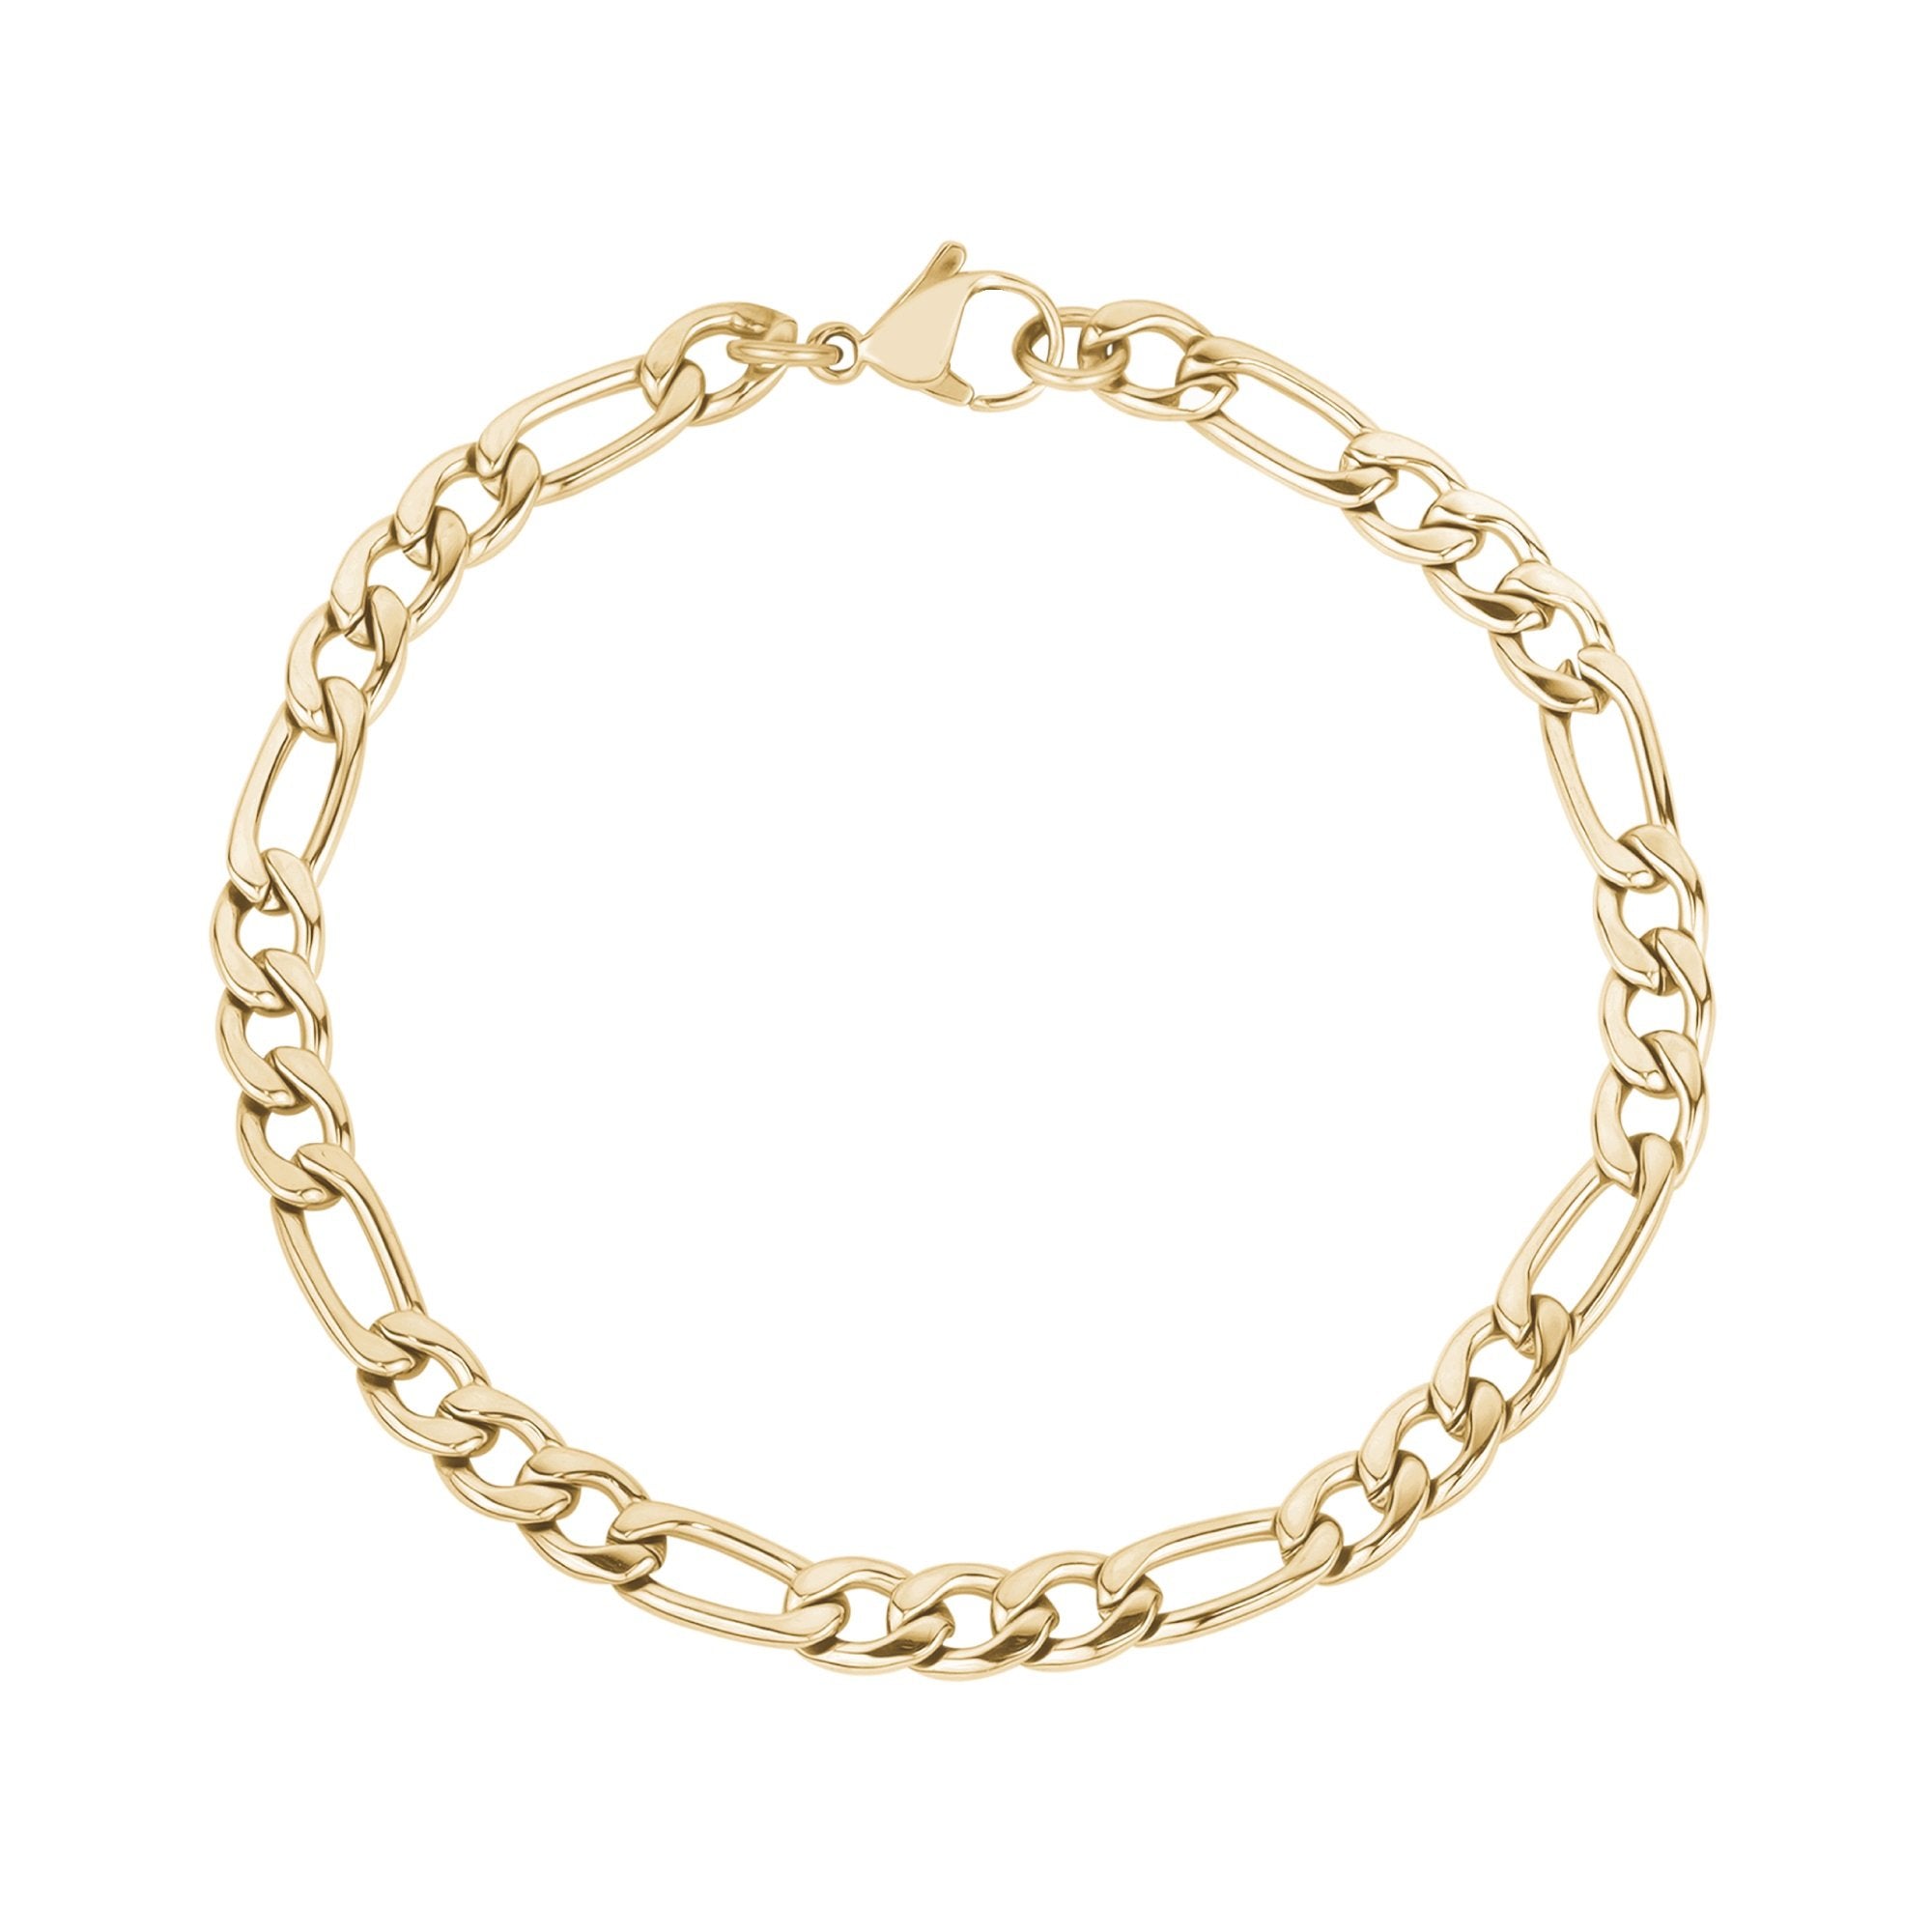 Miami Cuban Link Bracelet - 6mm – Liry's Jewelry